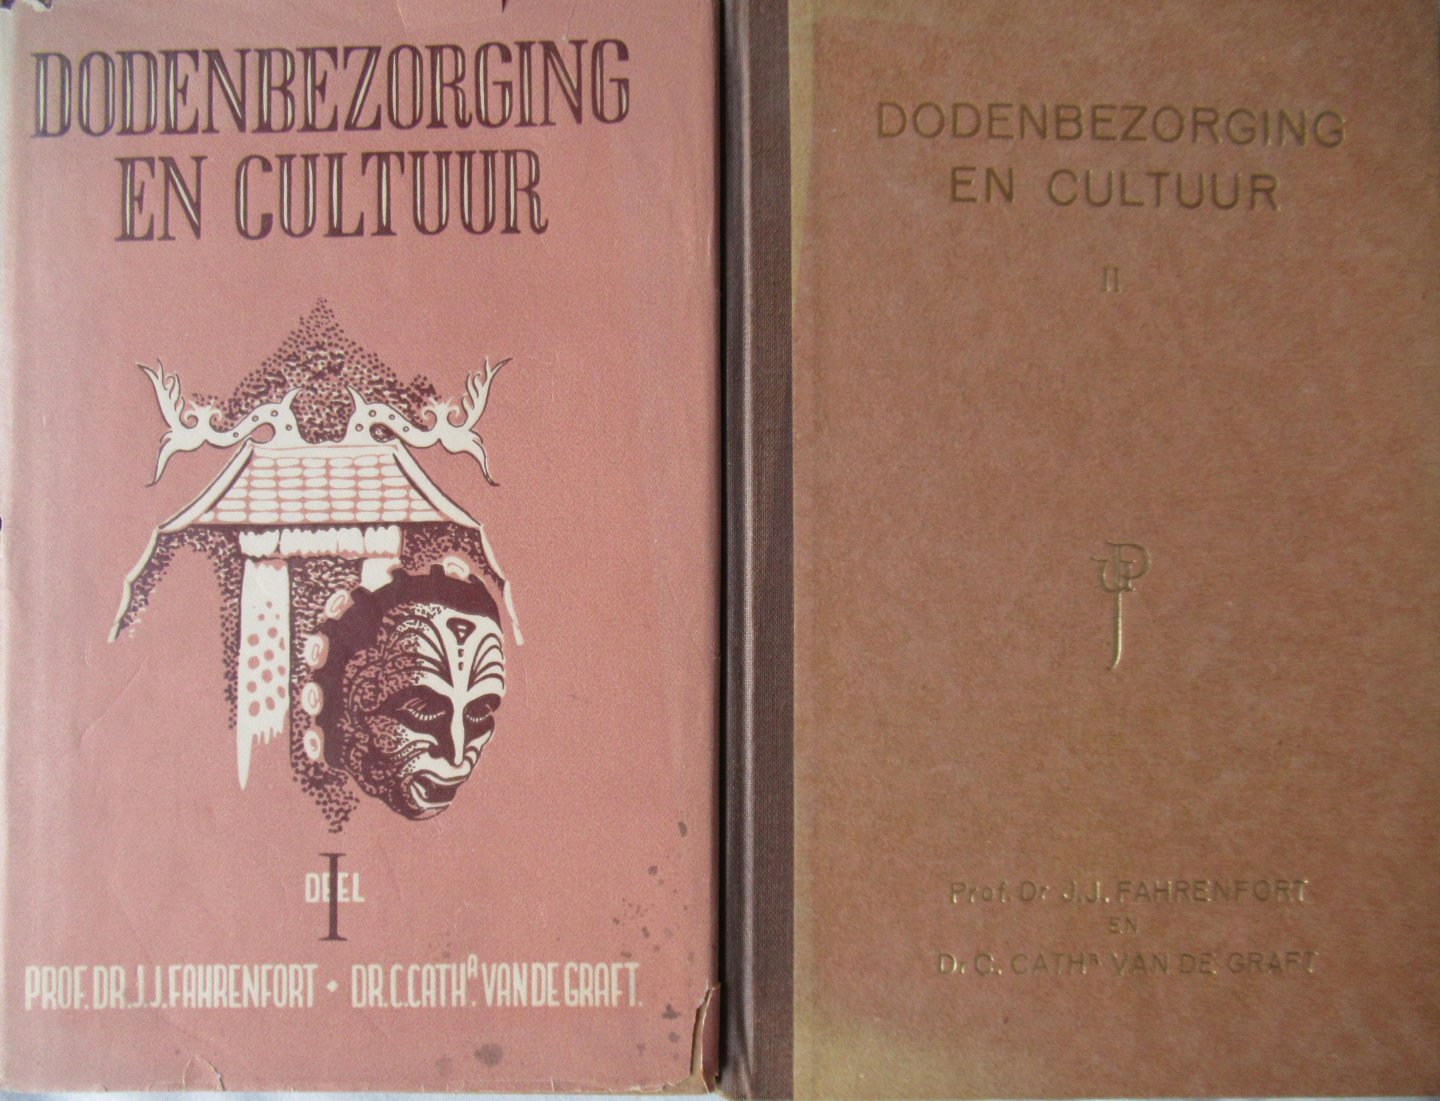 Fahrenfort, Prof. Dr. J.J. - Graft, van der Dr. C.C. - Dodenbezorging en cultuur, 2 delen.